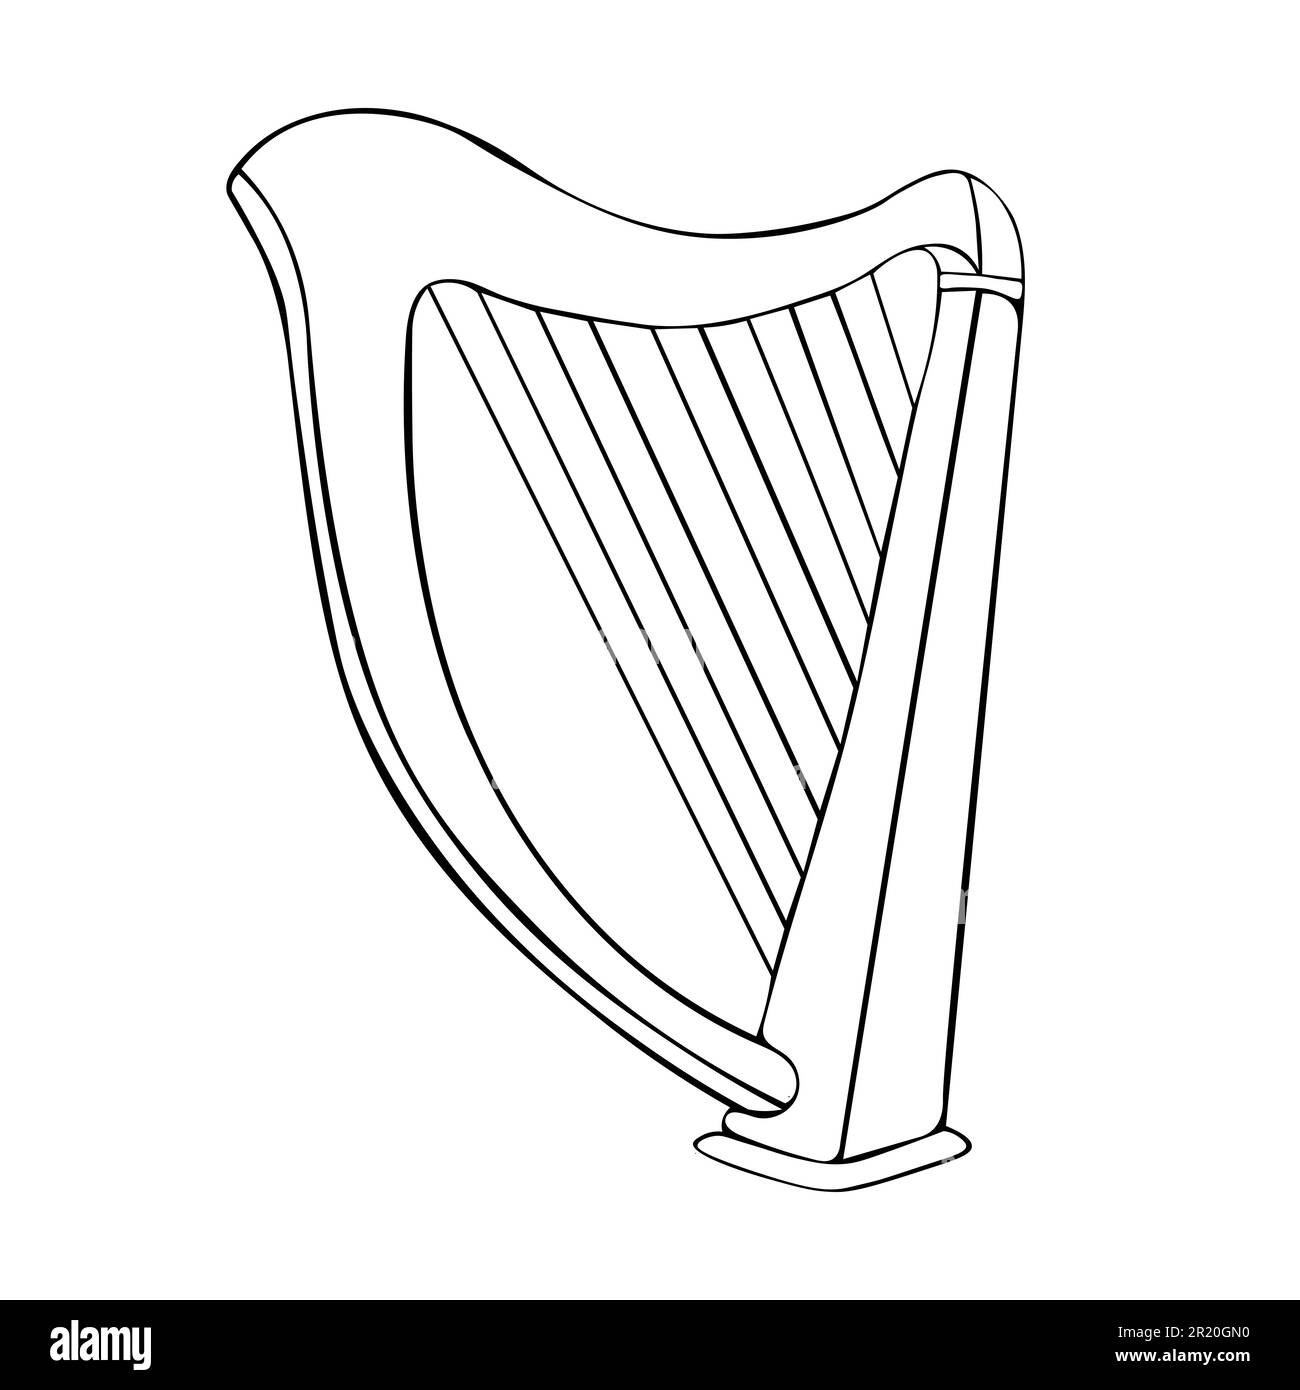 Ancien instrument de musique à cordes est une harpe classique en bois. Instruments de musique historiques harpe Illustration de Vecteur